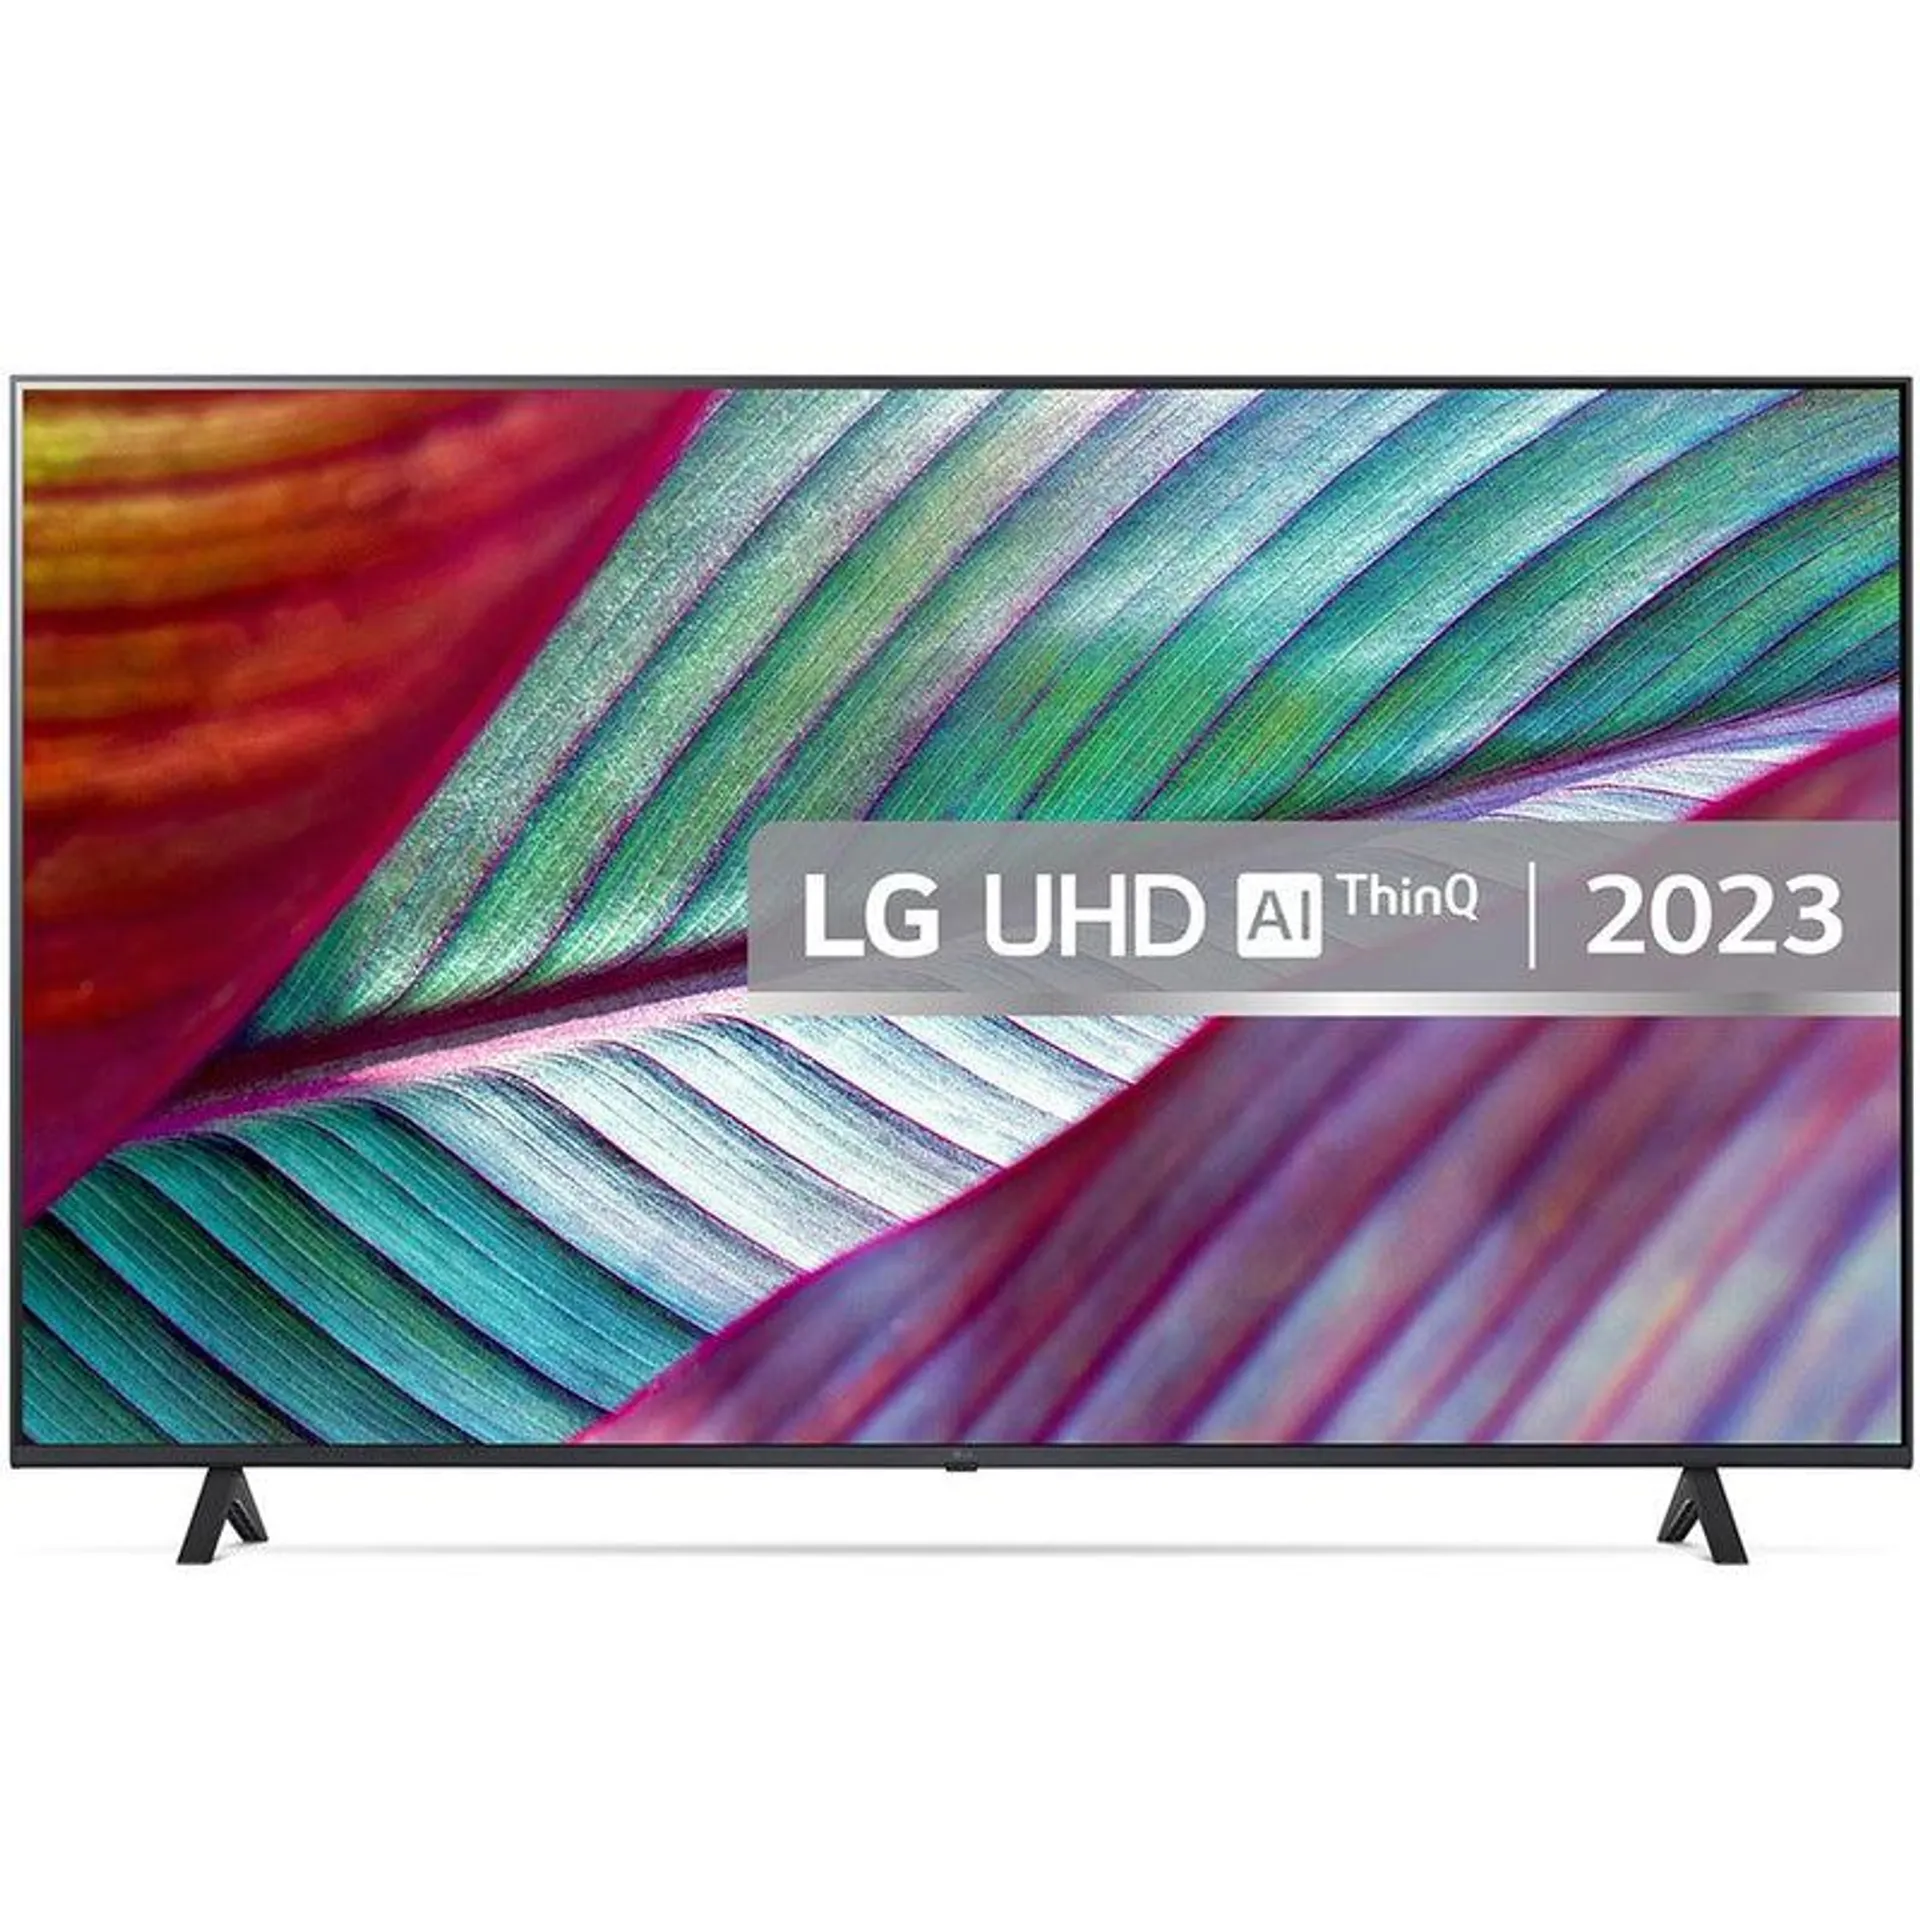 LG UR78 55" 4K UHD LED Smart TV - Black | 55UR78006LK.AEK